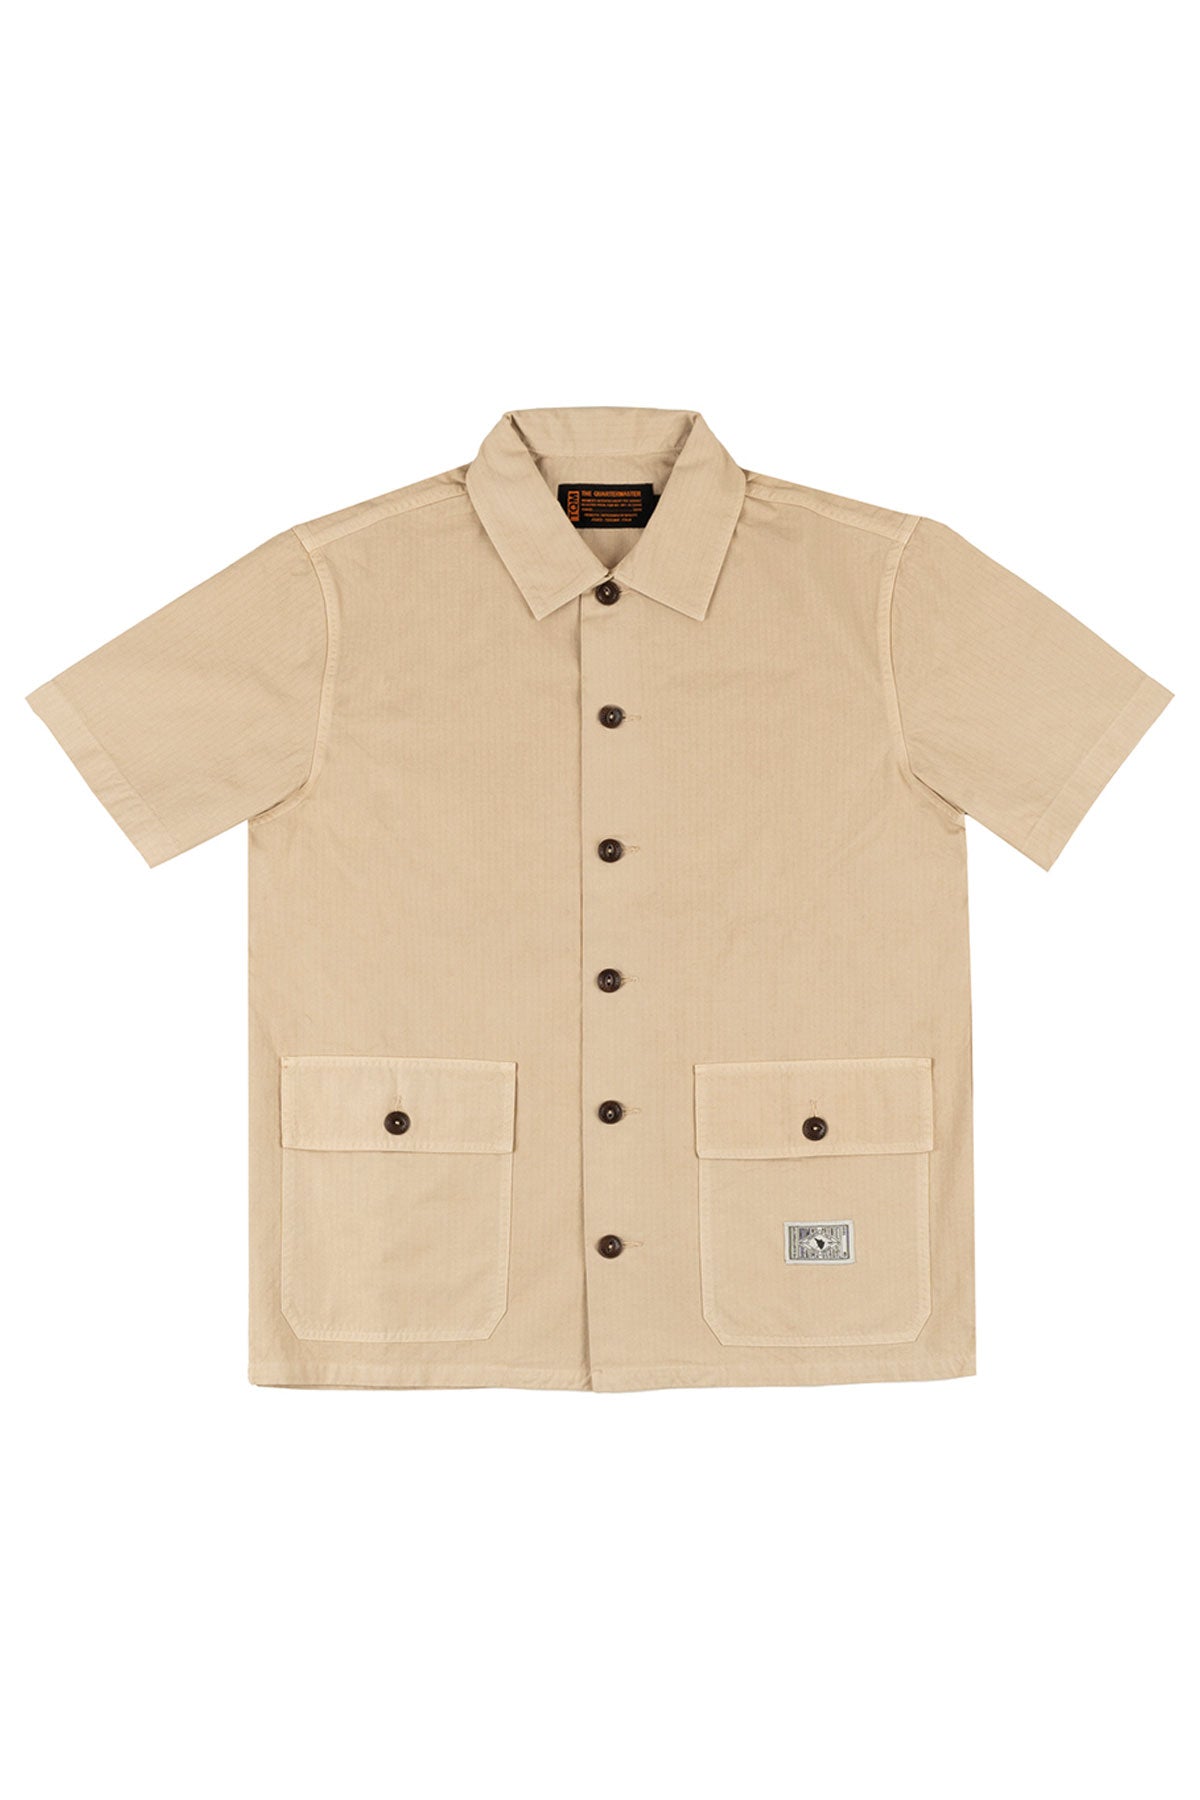 The Quartermaster - Safari Shirt in Ripstop Khaki